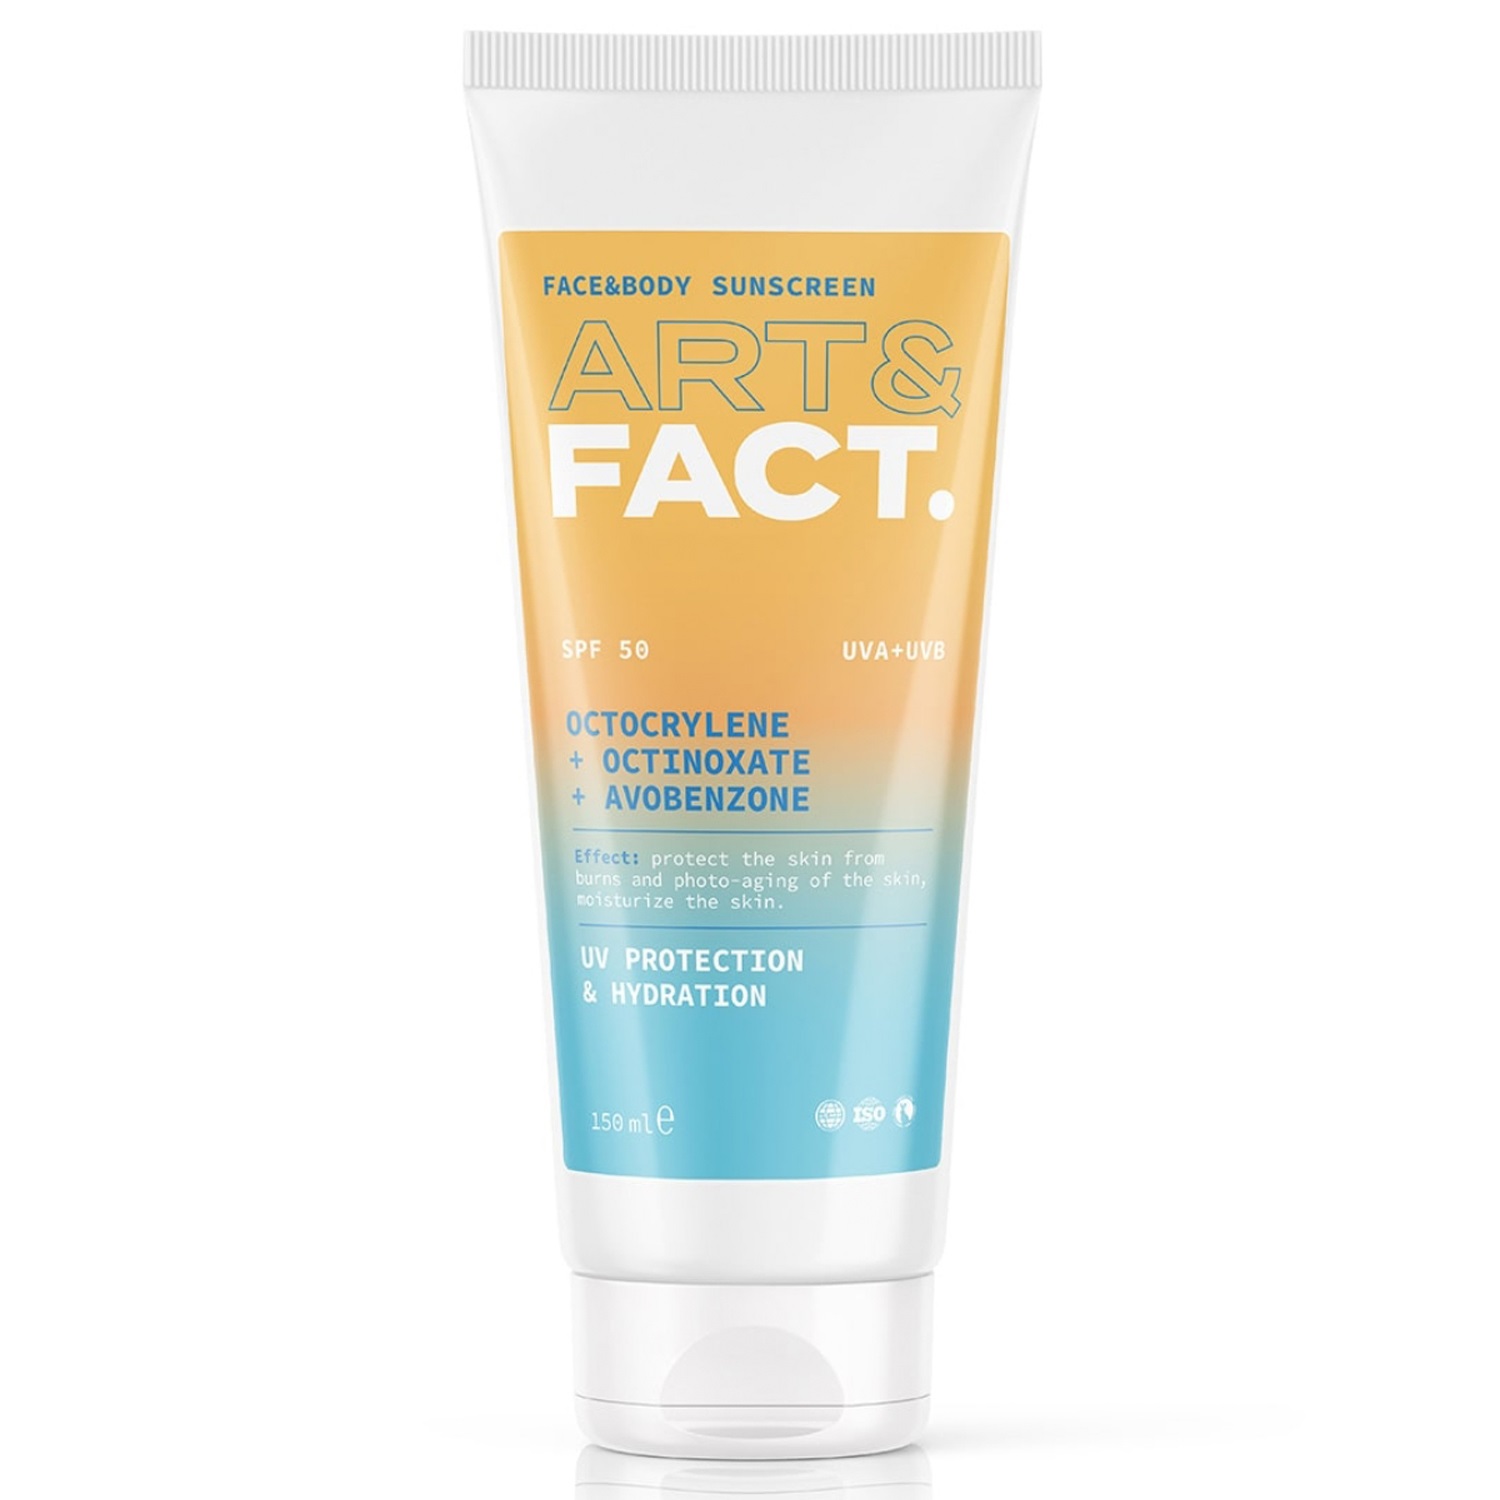 Art&Fact Ежедневный солнцезащитный крем SPF 50 с химическими фильтрами Octocrylene + Octinoxate + Avobenzone. Face&body sunscreen для всех типов кожи лица и тела, 150 мл (Art&Fact, Защита от солнца) цена и фото